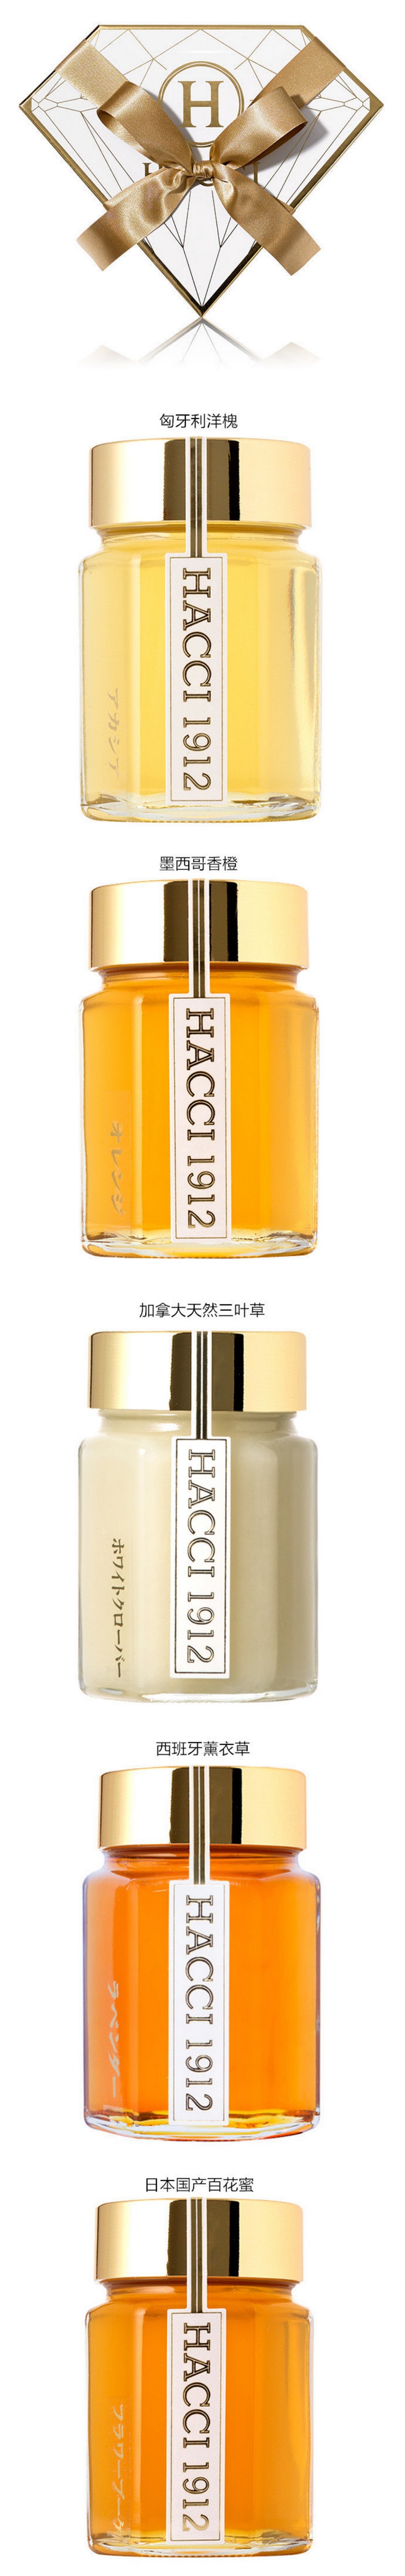 【日本直郵】HACCI花綺 鑽石蜂蜜禮盒 5瓶裝 95g x 5